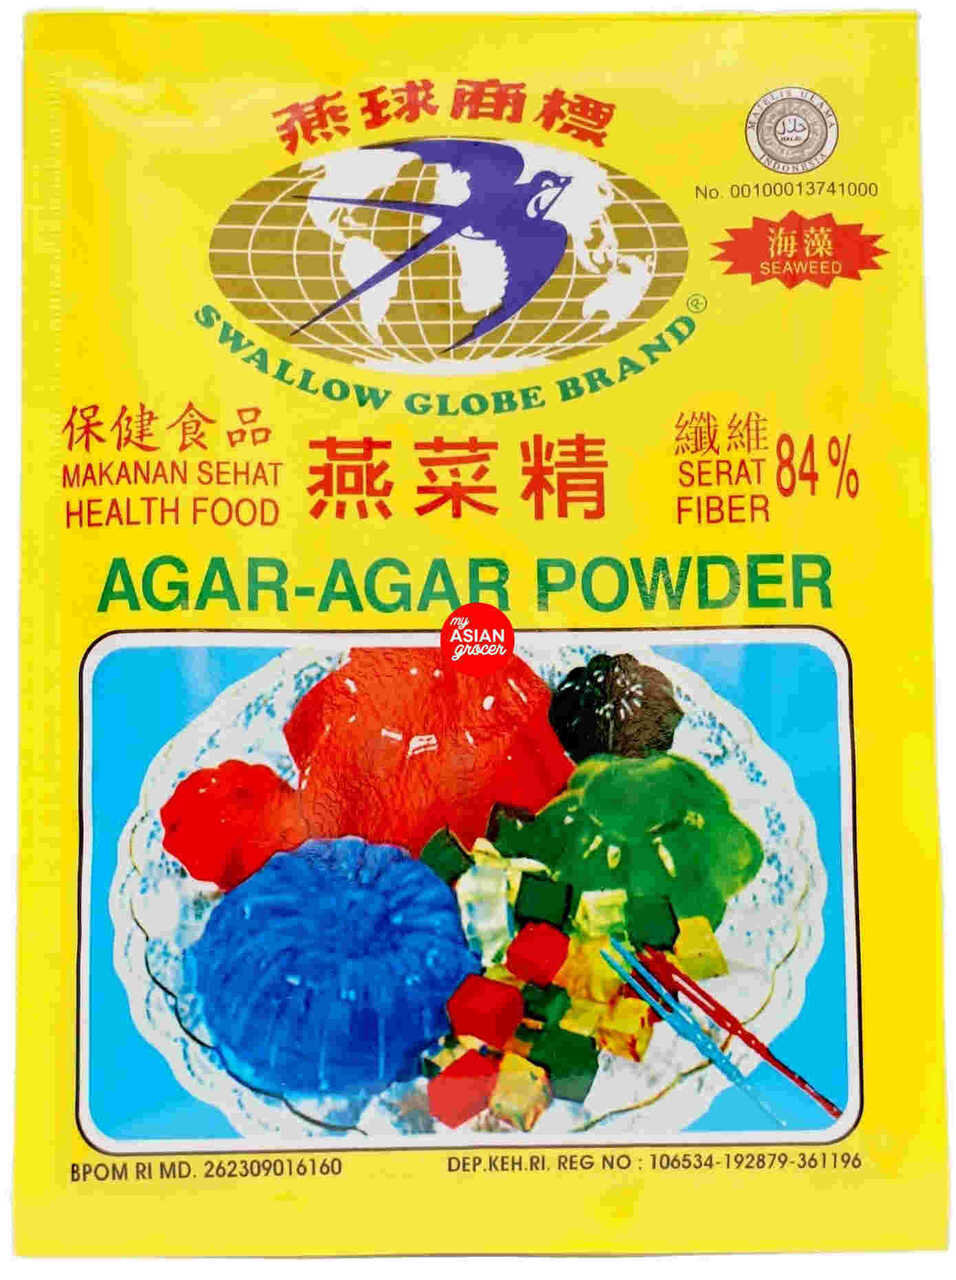 Agar-Agar Powder Swallow Globe Brand 7 gr - Green/Hijau